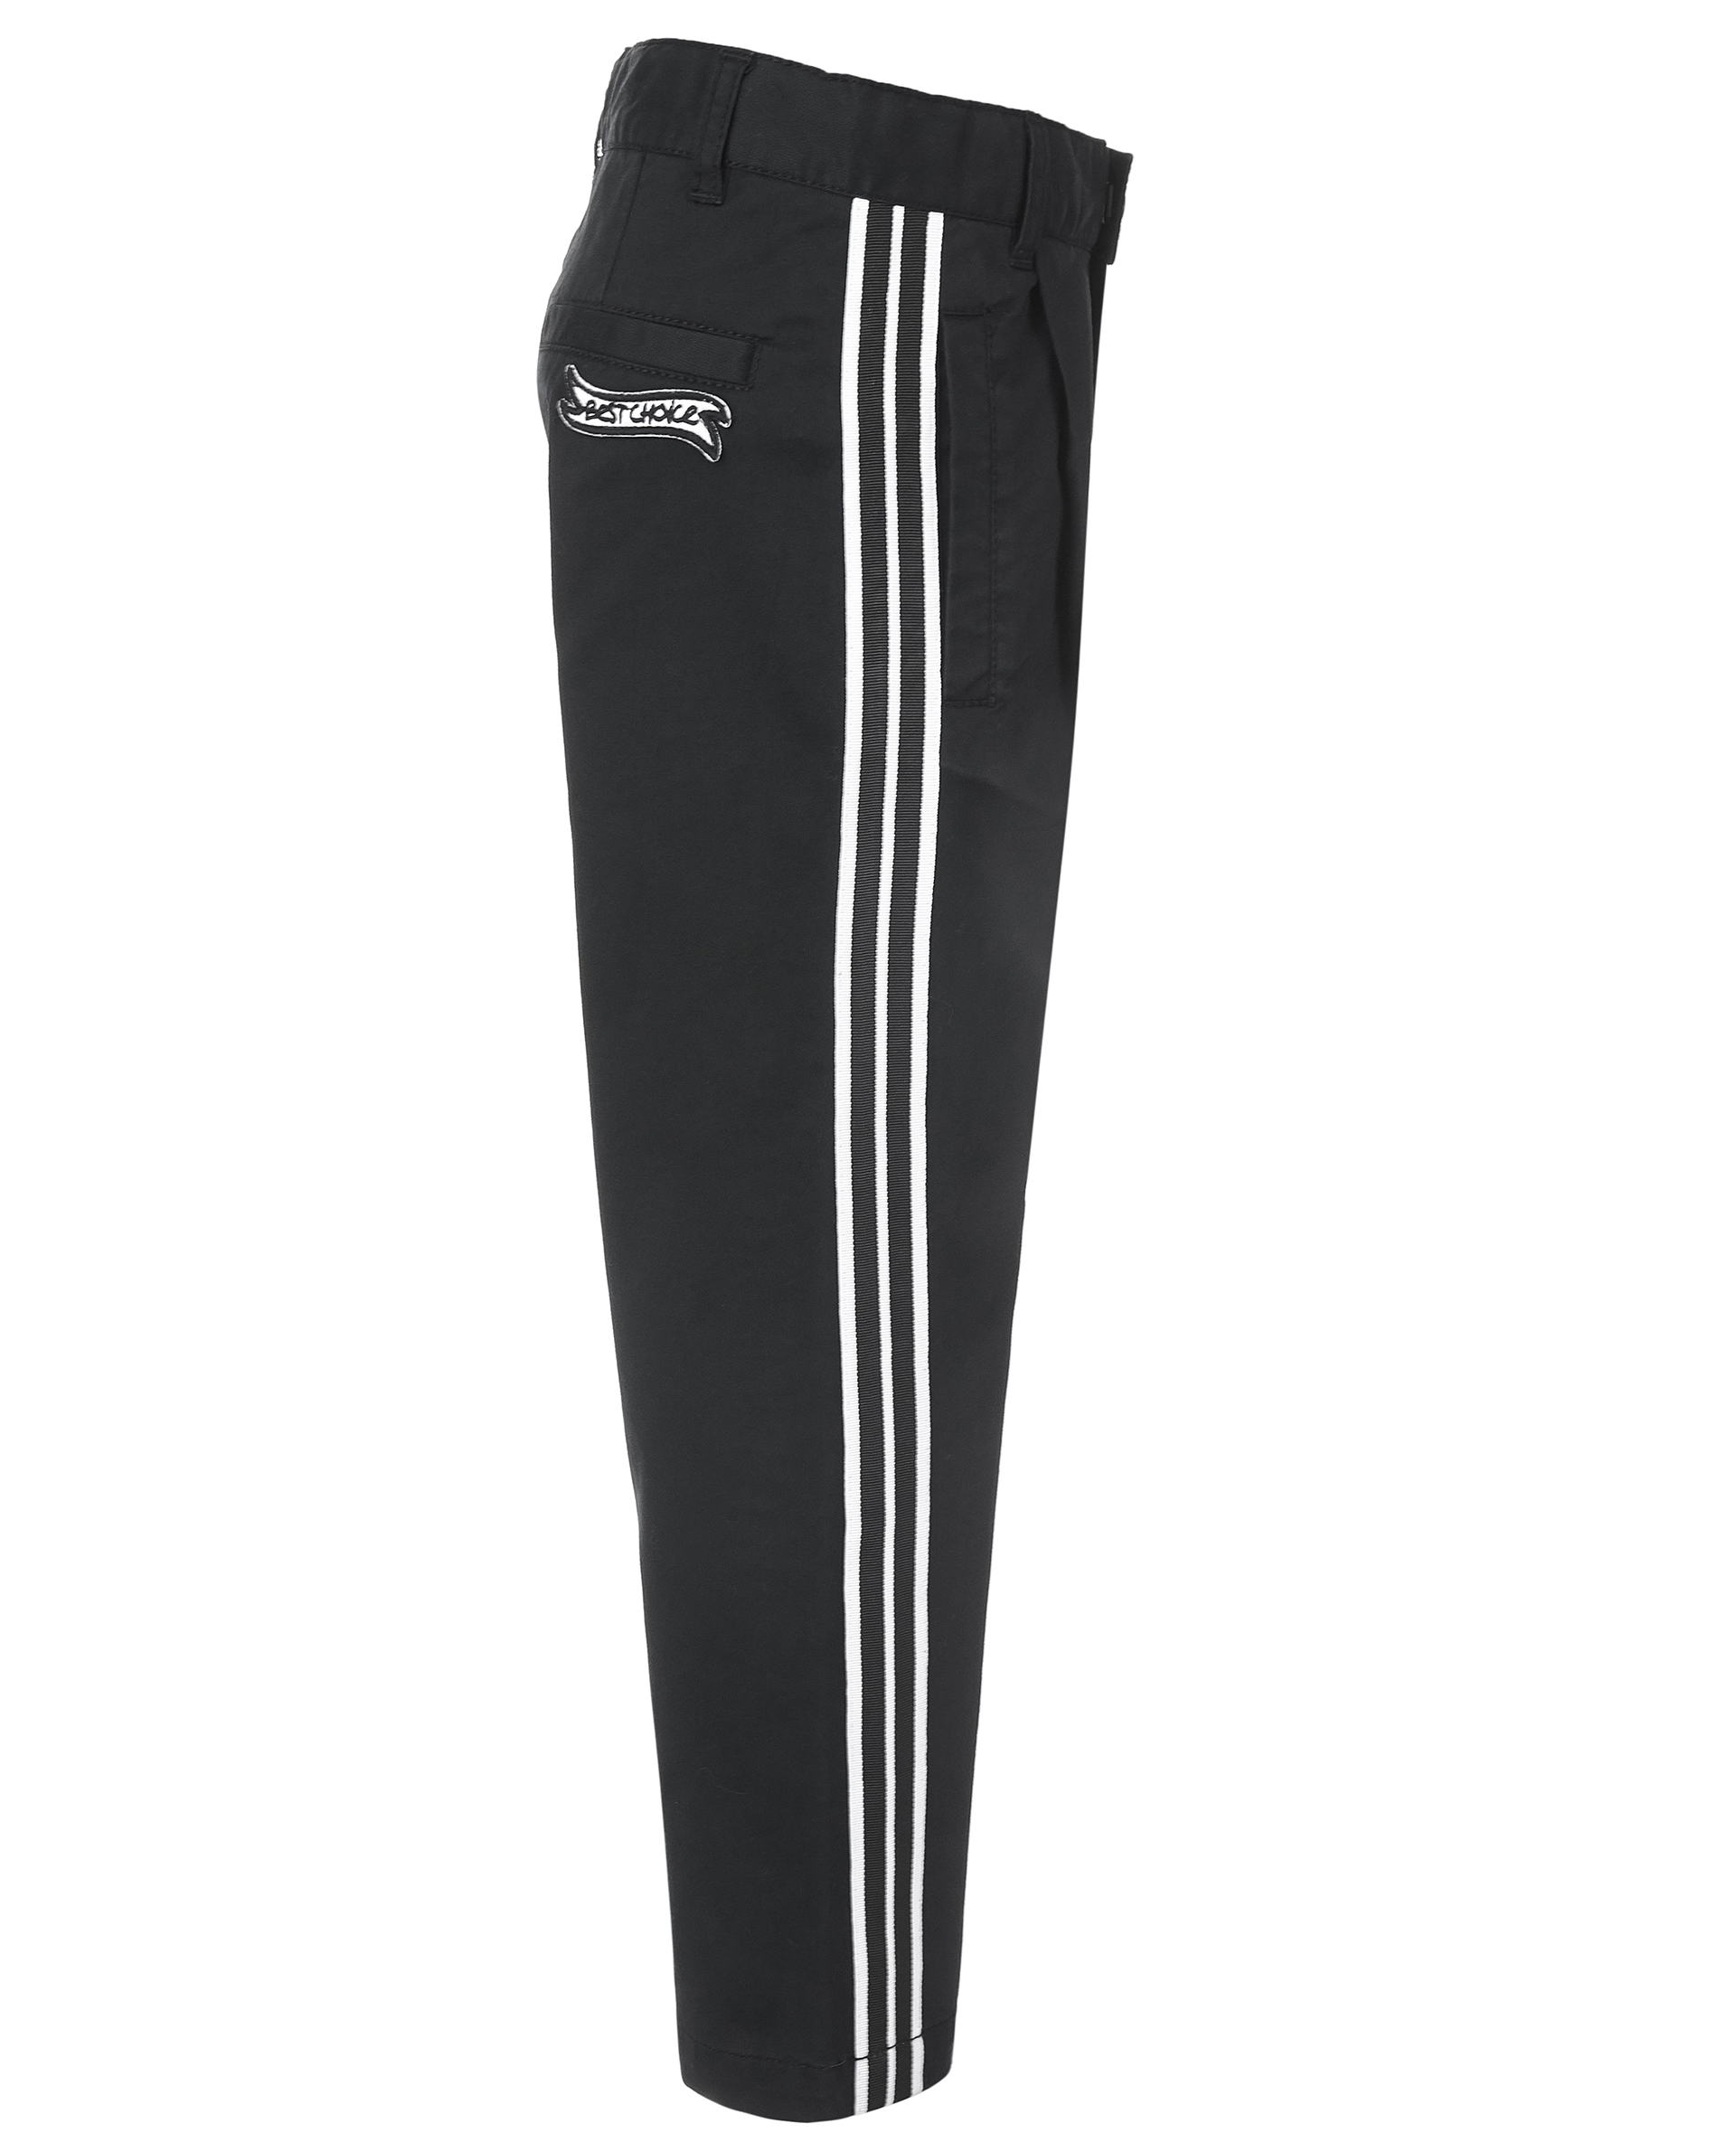 Черные брюки с лампасами Gulliver 11905BMC6301, размер 104, цвет черный - фото 3